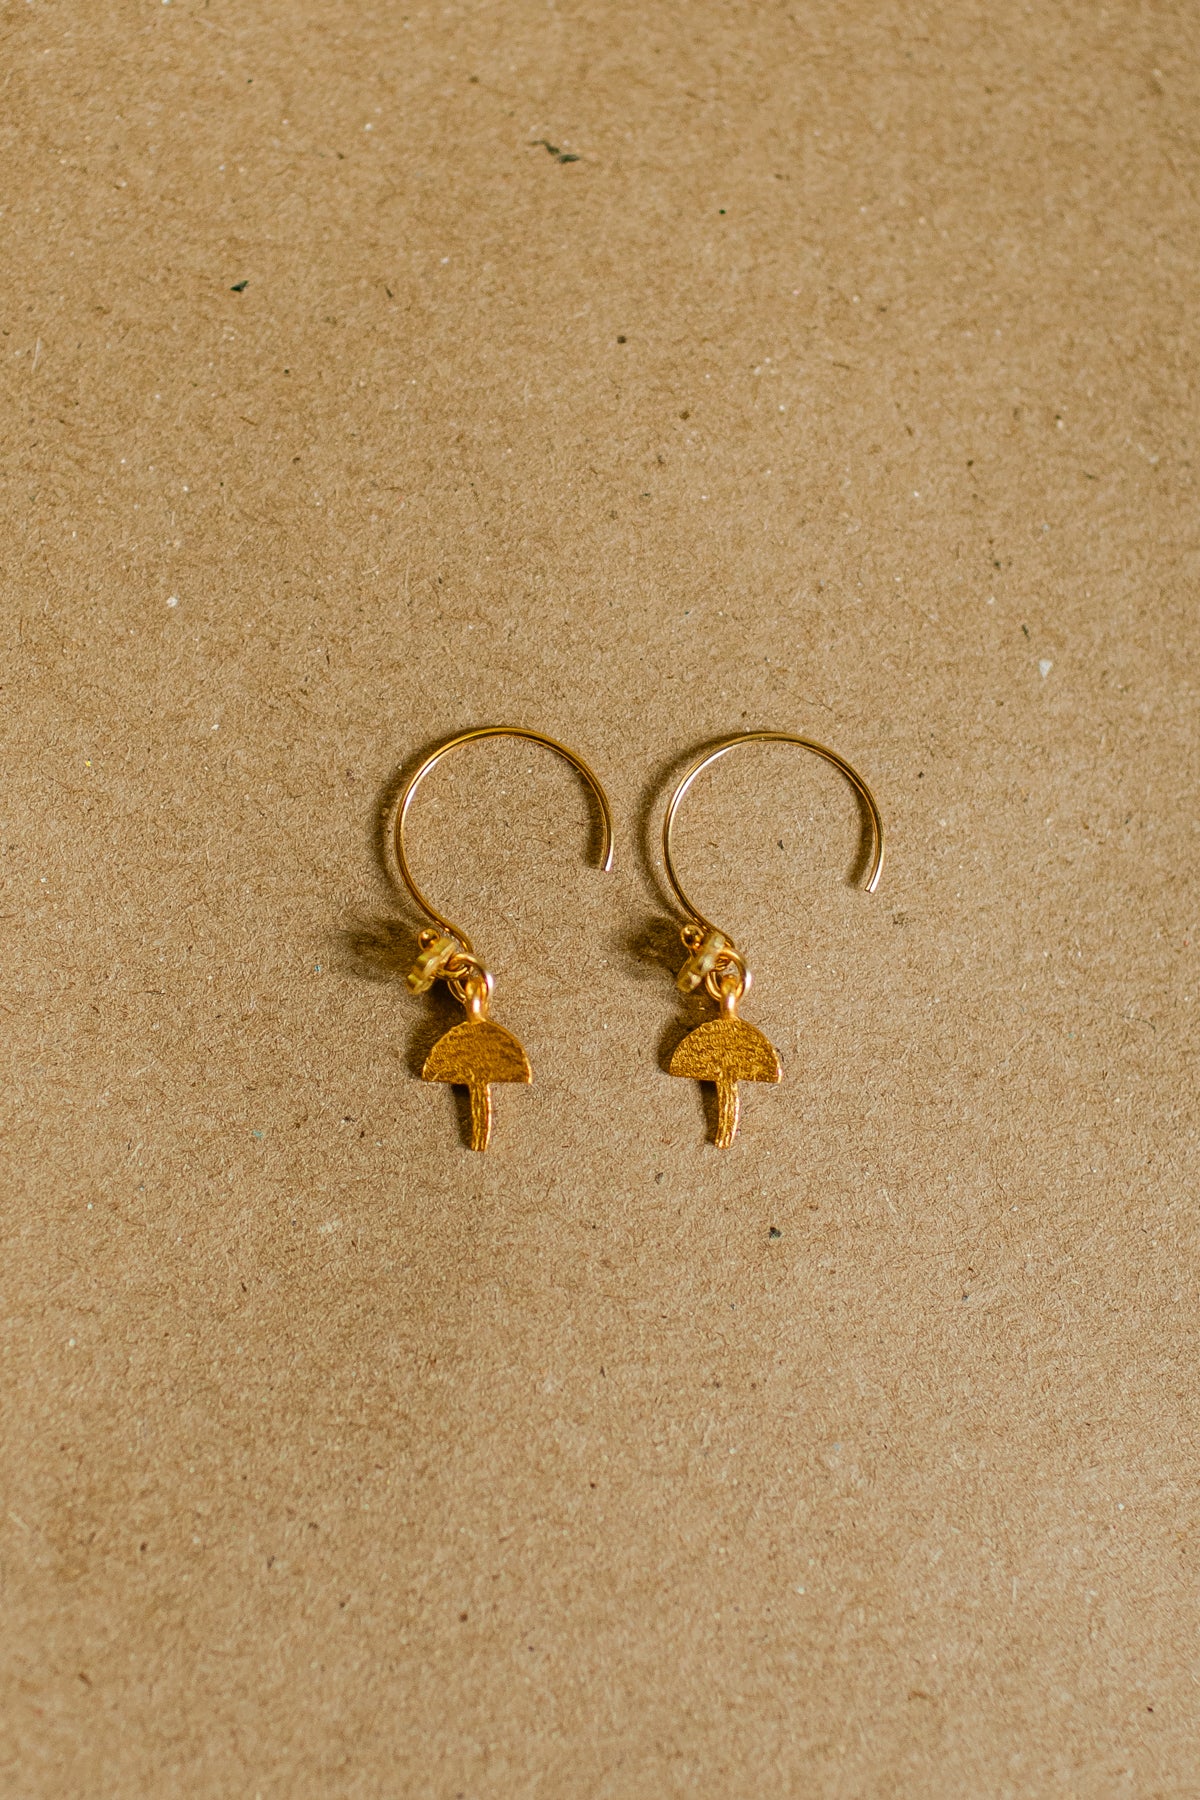 Flower capped mushroom earrings with 22kt gold